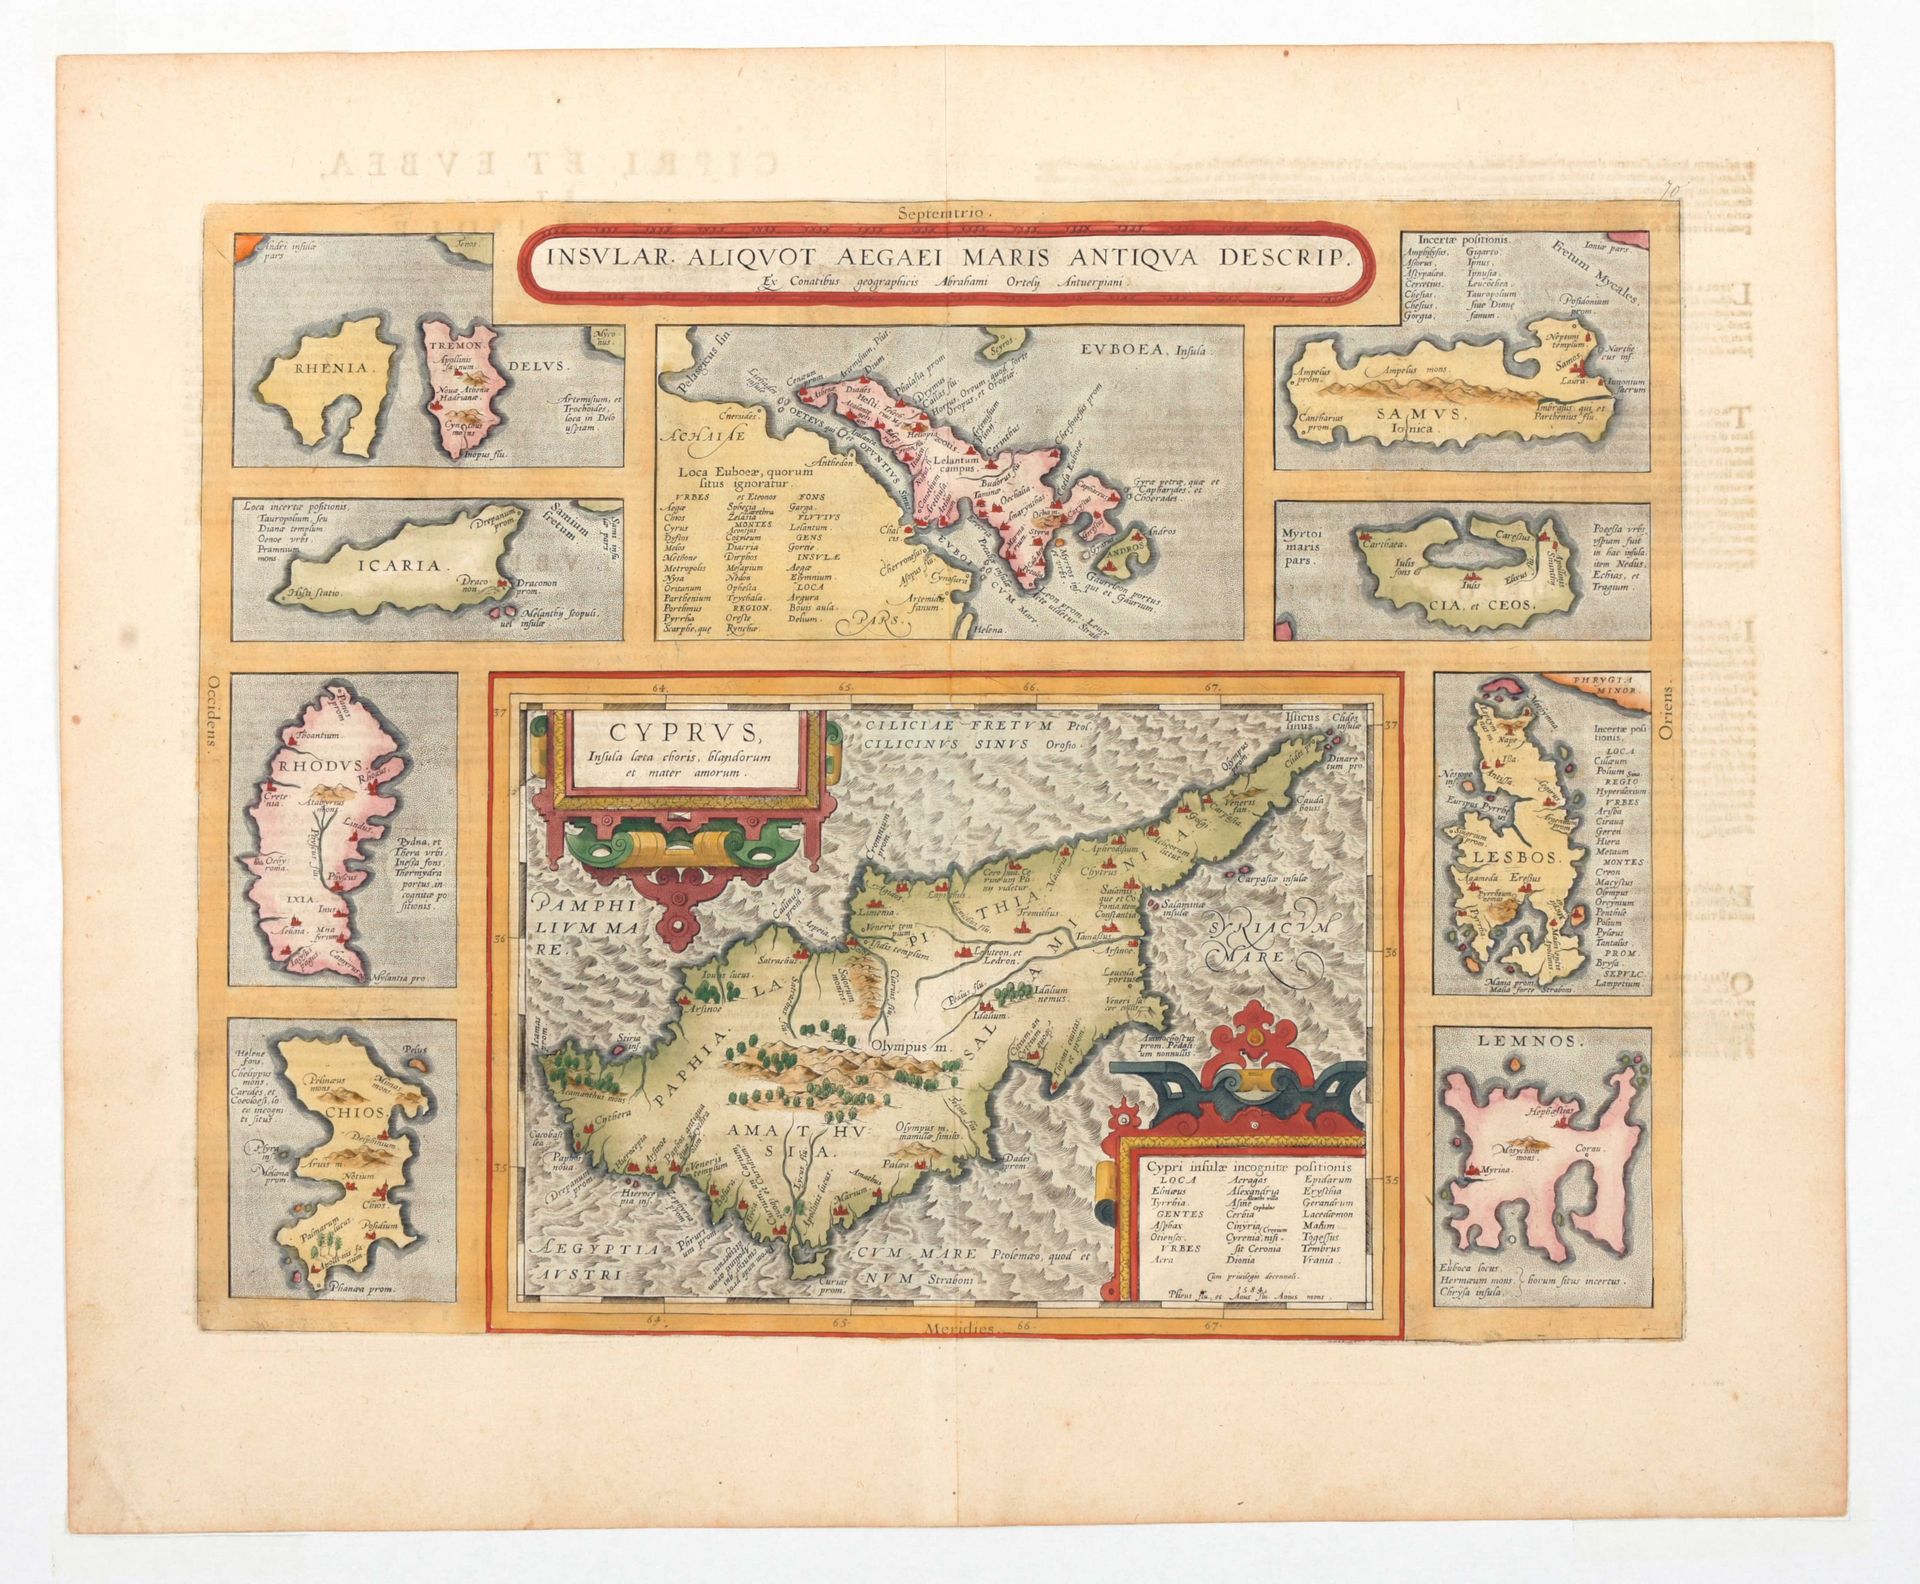 [CYPRUS] Aliquot insular aegei maris antiqua descript

Mapa original (37 x 47,5 &hellip;